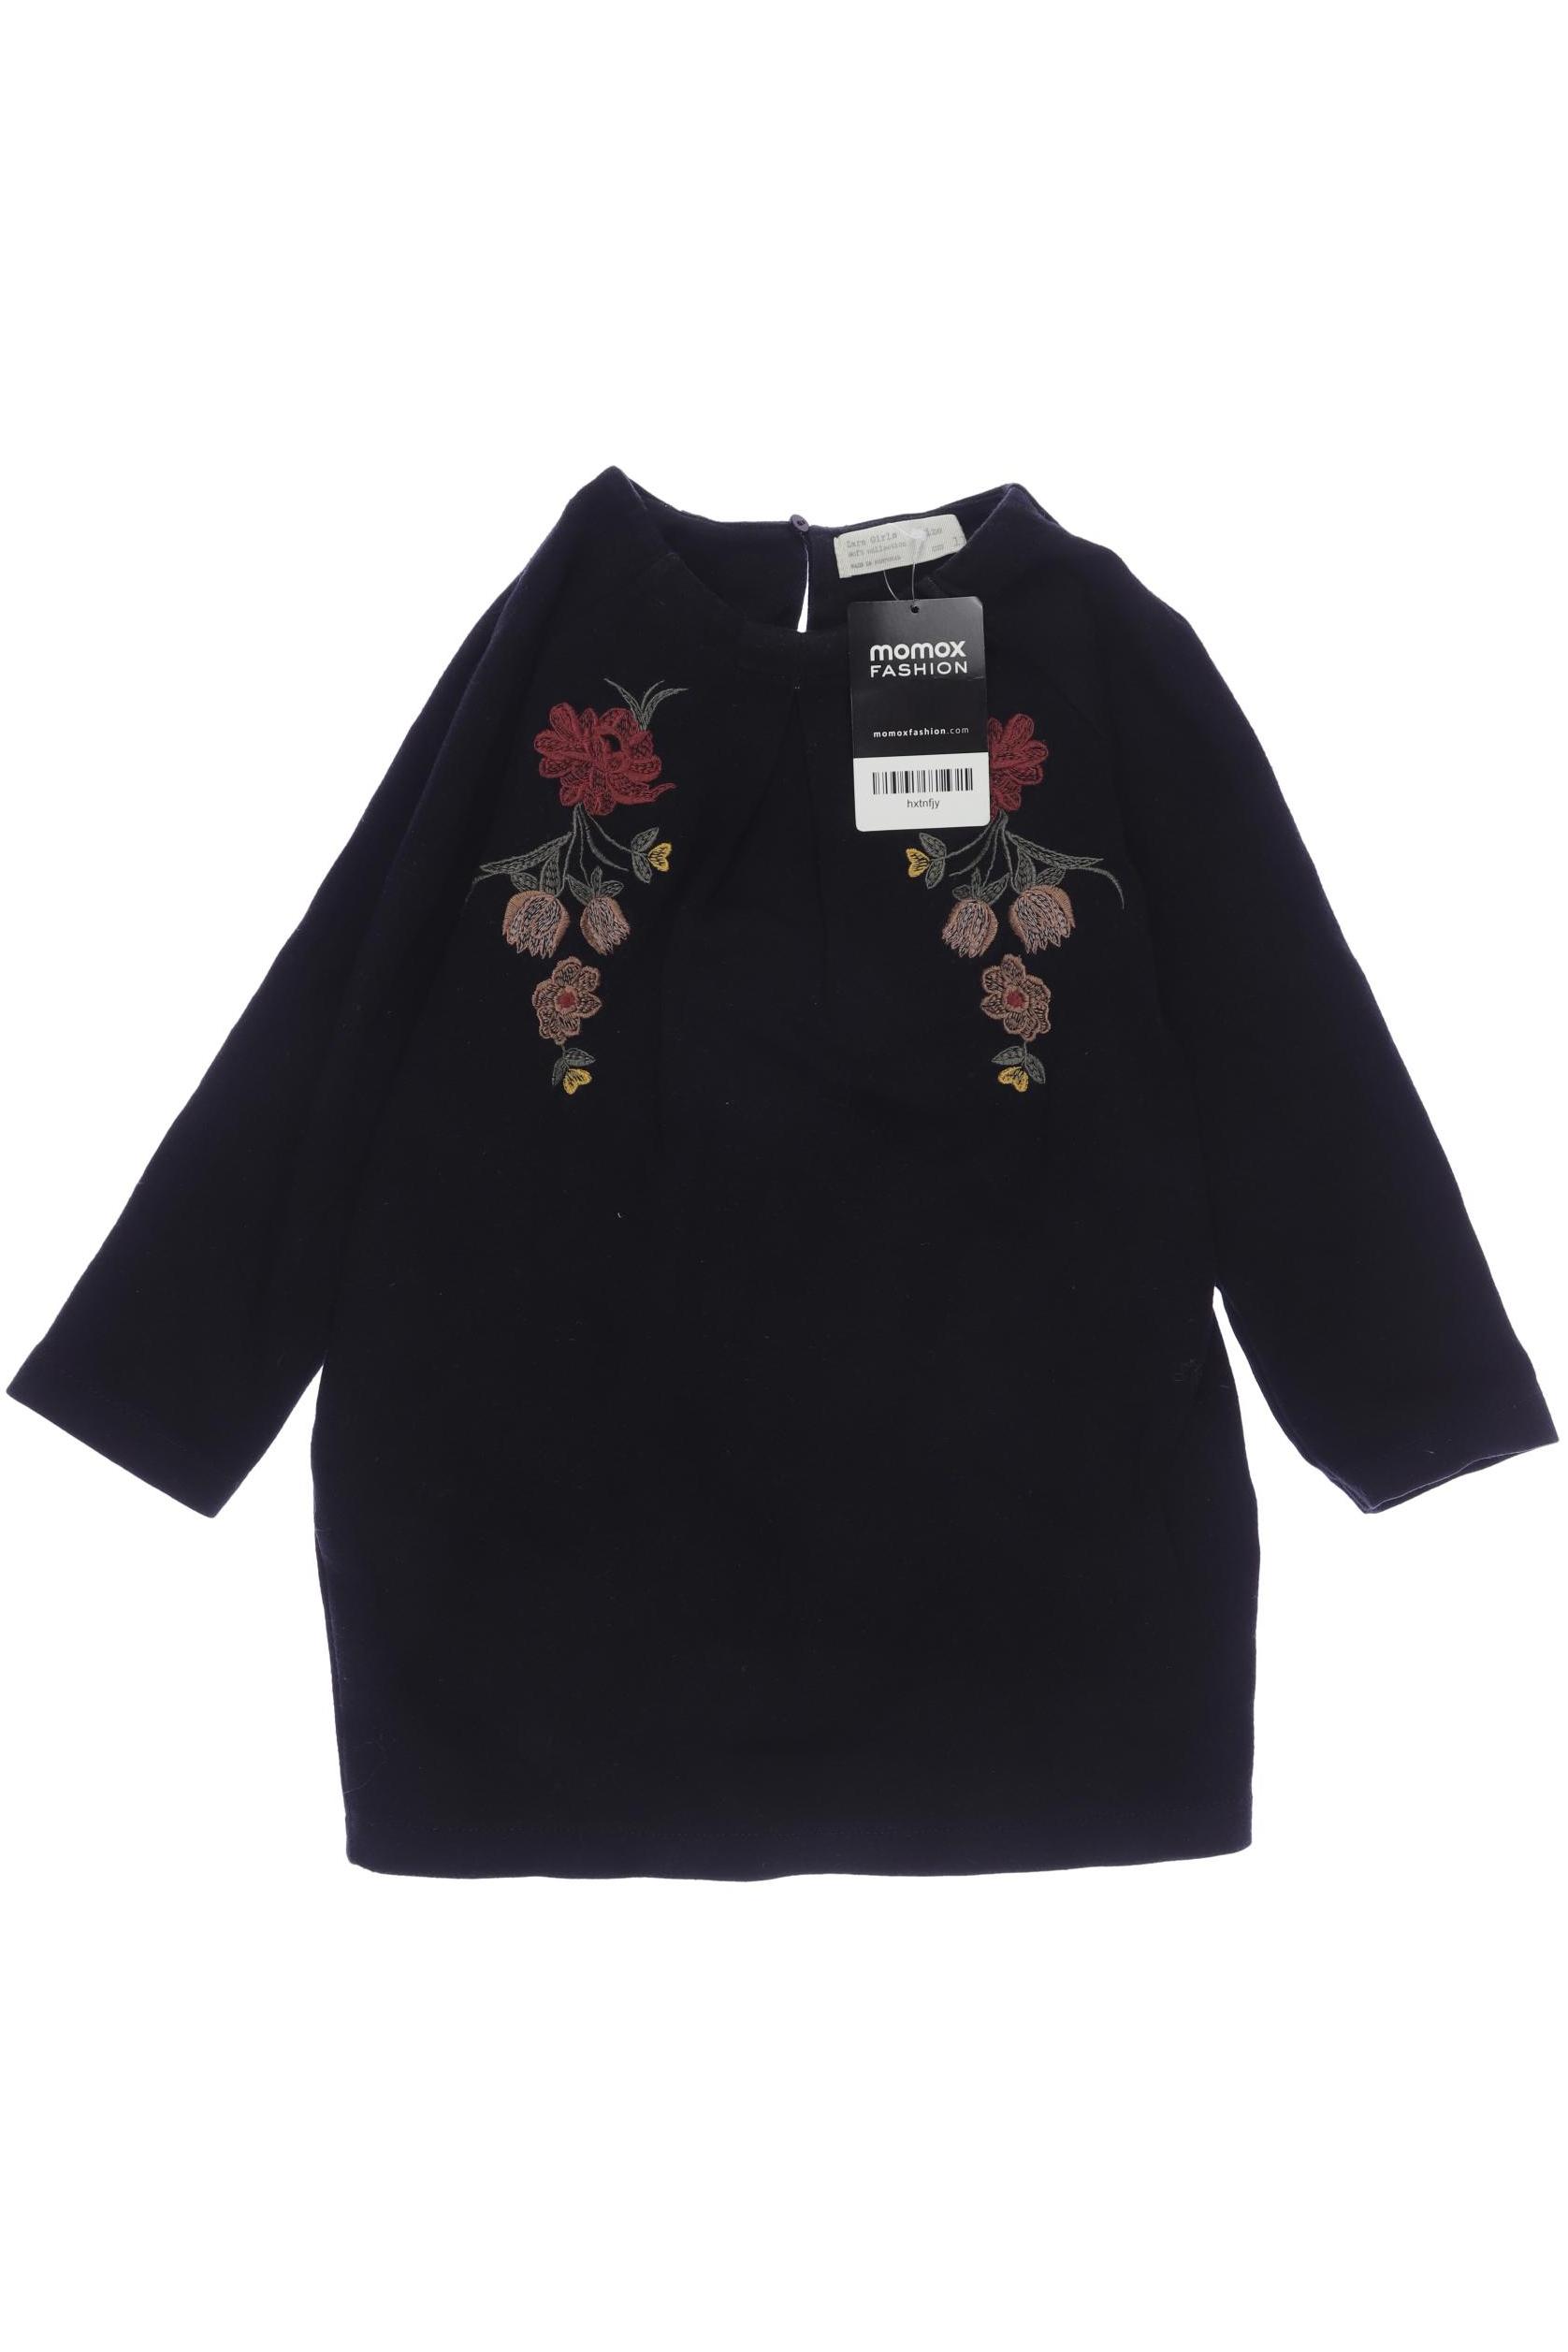 Zara Damen Hoodies & Sweater, schwarz, Gr. 116 von ZARA